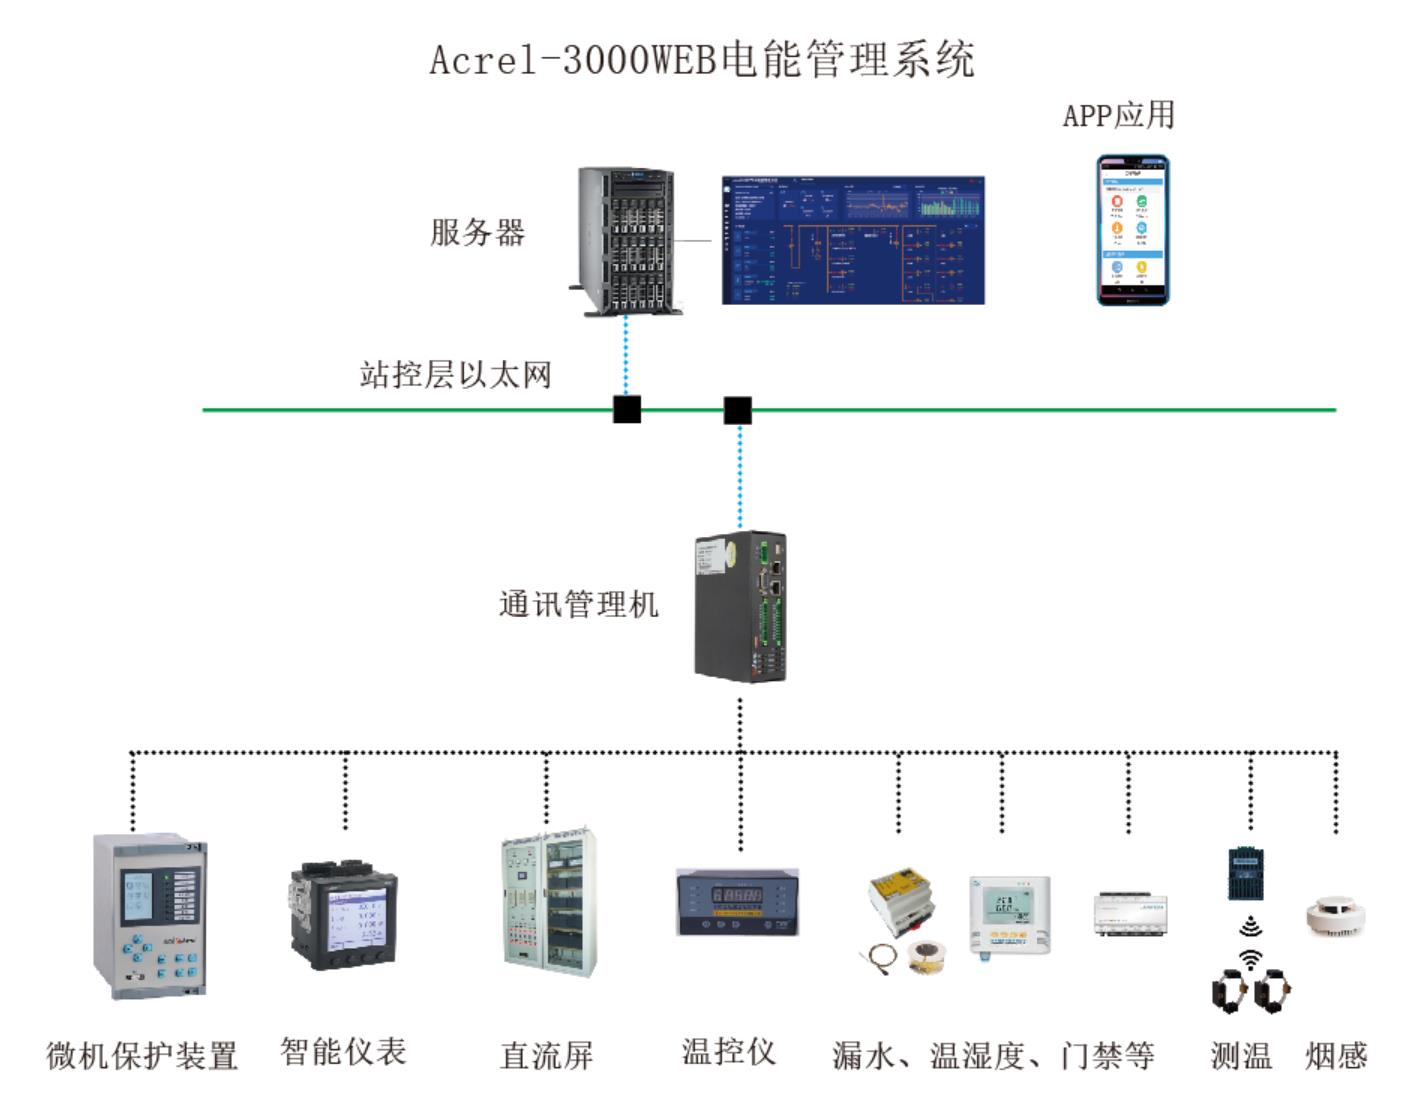 石家庄医院电能管理系统厂家 型号 Acrel-3000WEB 安科瑞为企业用电管理提供解决方案